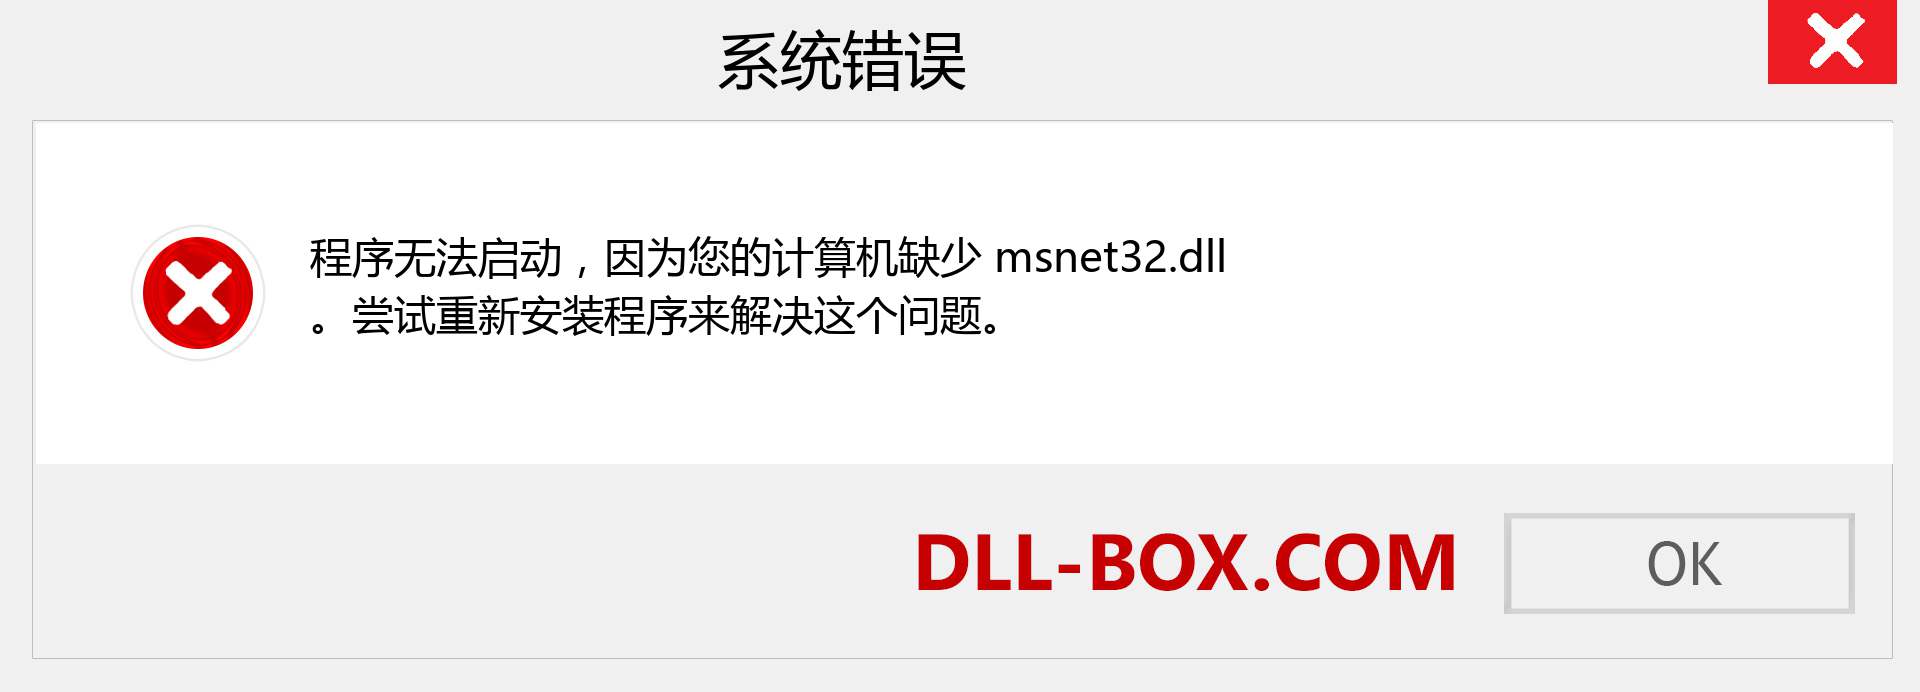 msnet32.dll 文件丢失？。 适用于 Windows 7、8、10 的下载 - 修复 Windows、照片、图像上的 msnet32 dll 丢失错误